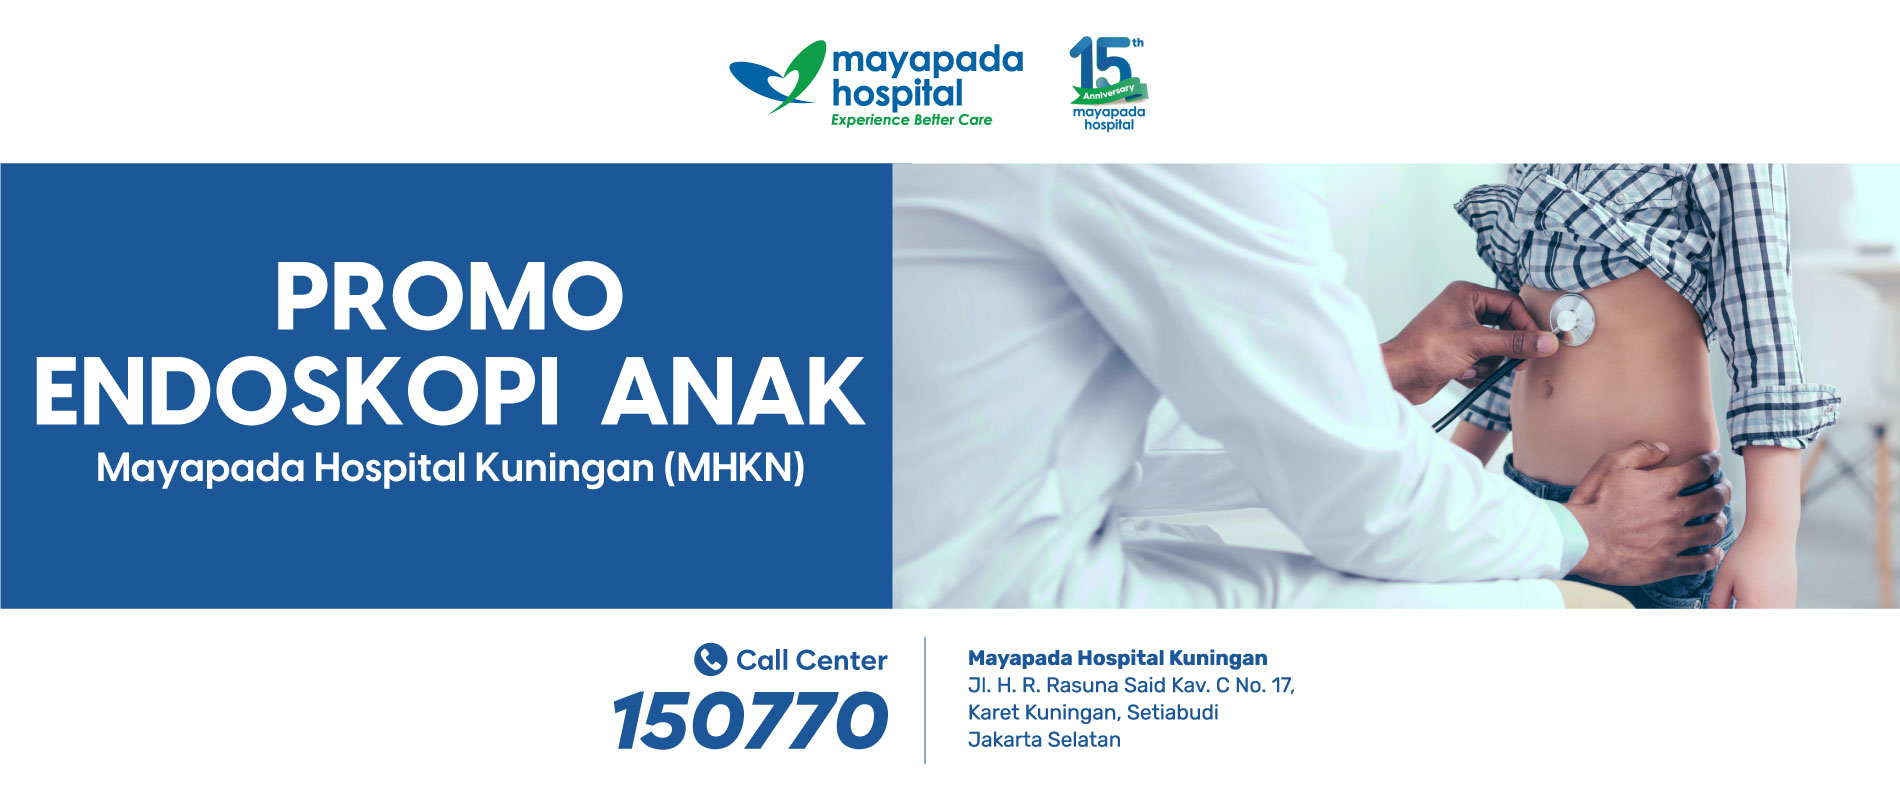 Promo Endoskopi Anak Mayapada Hospital Kuningan (MHKN) IMG